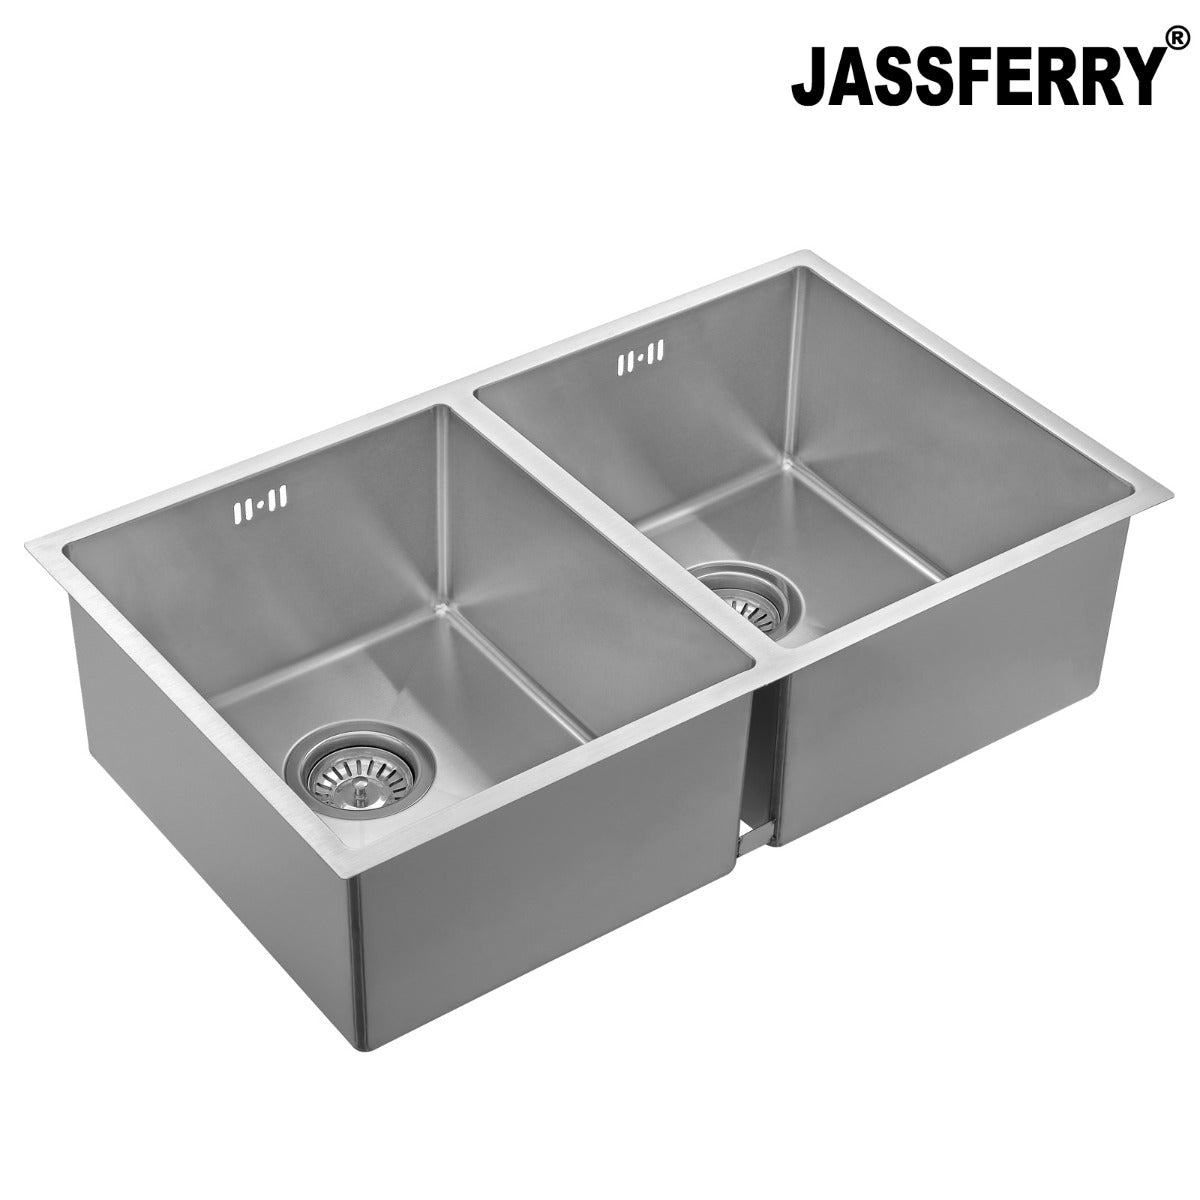 JassferryJASSFERRY Undermount Stainless Steel Kitchen Sink Handcrafted Double BowlKitchen Sinks